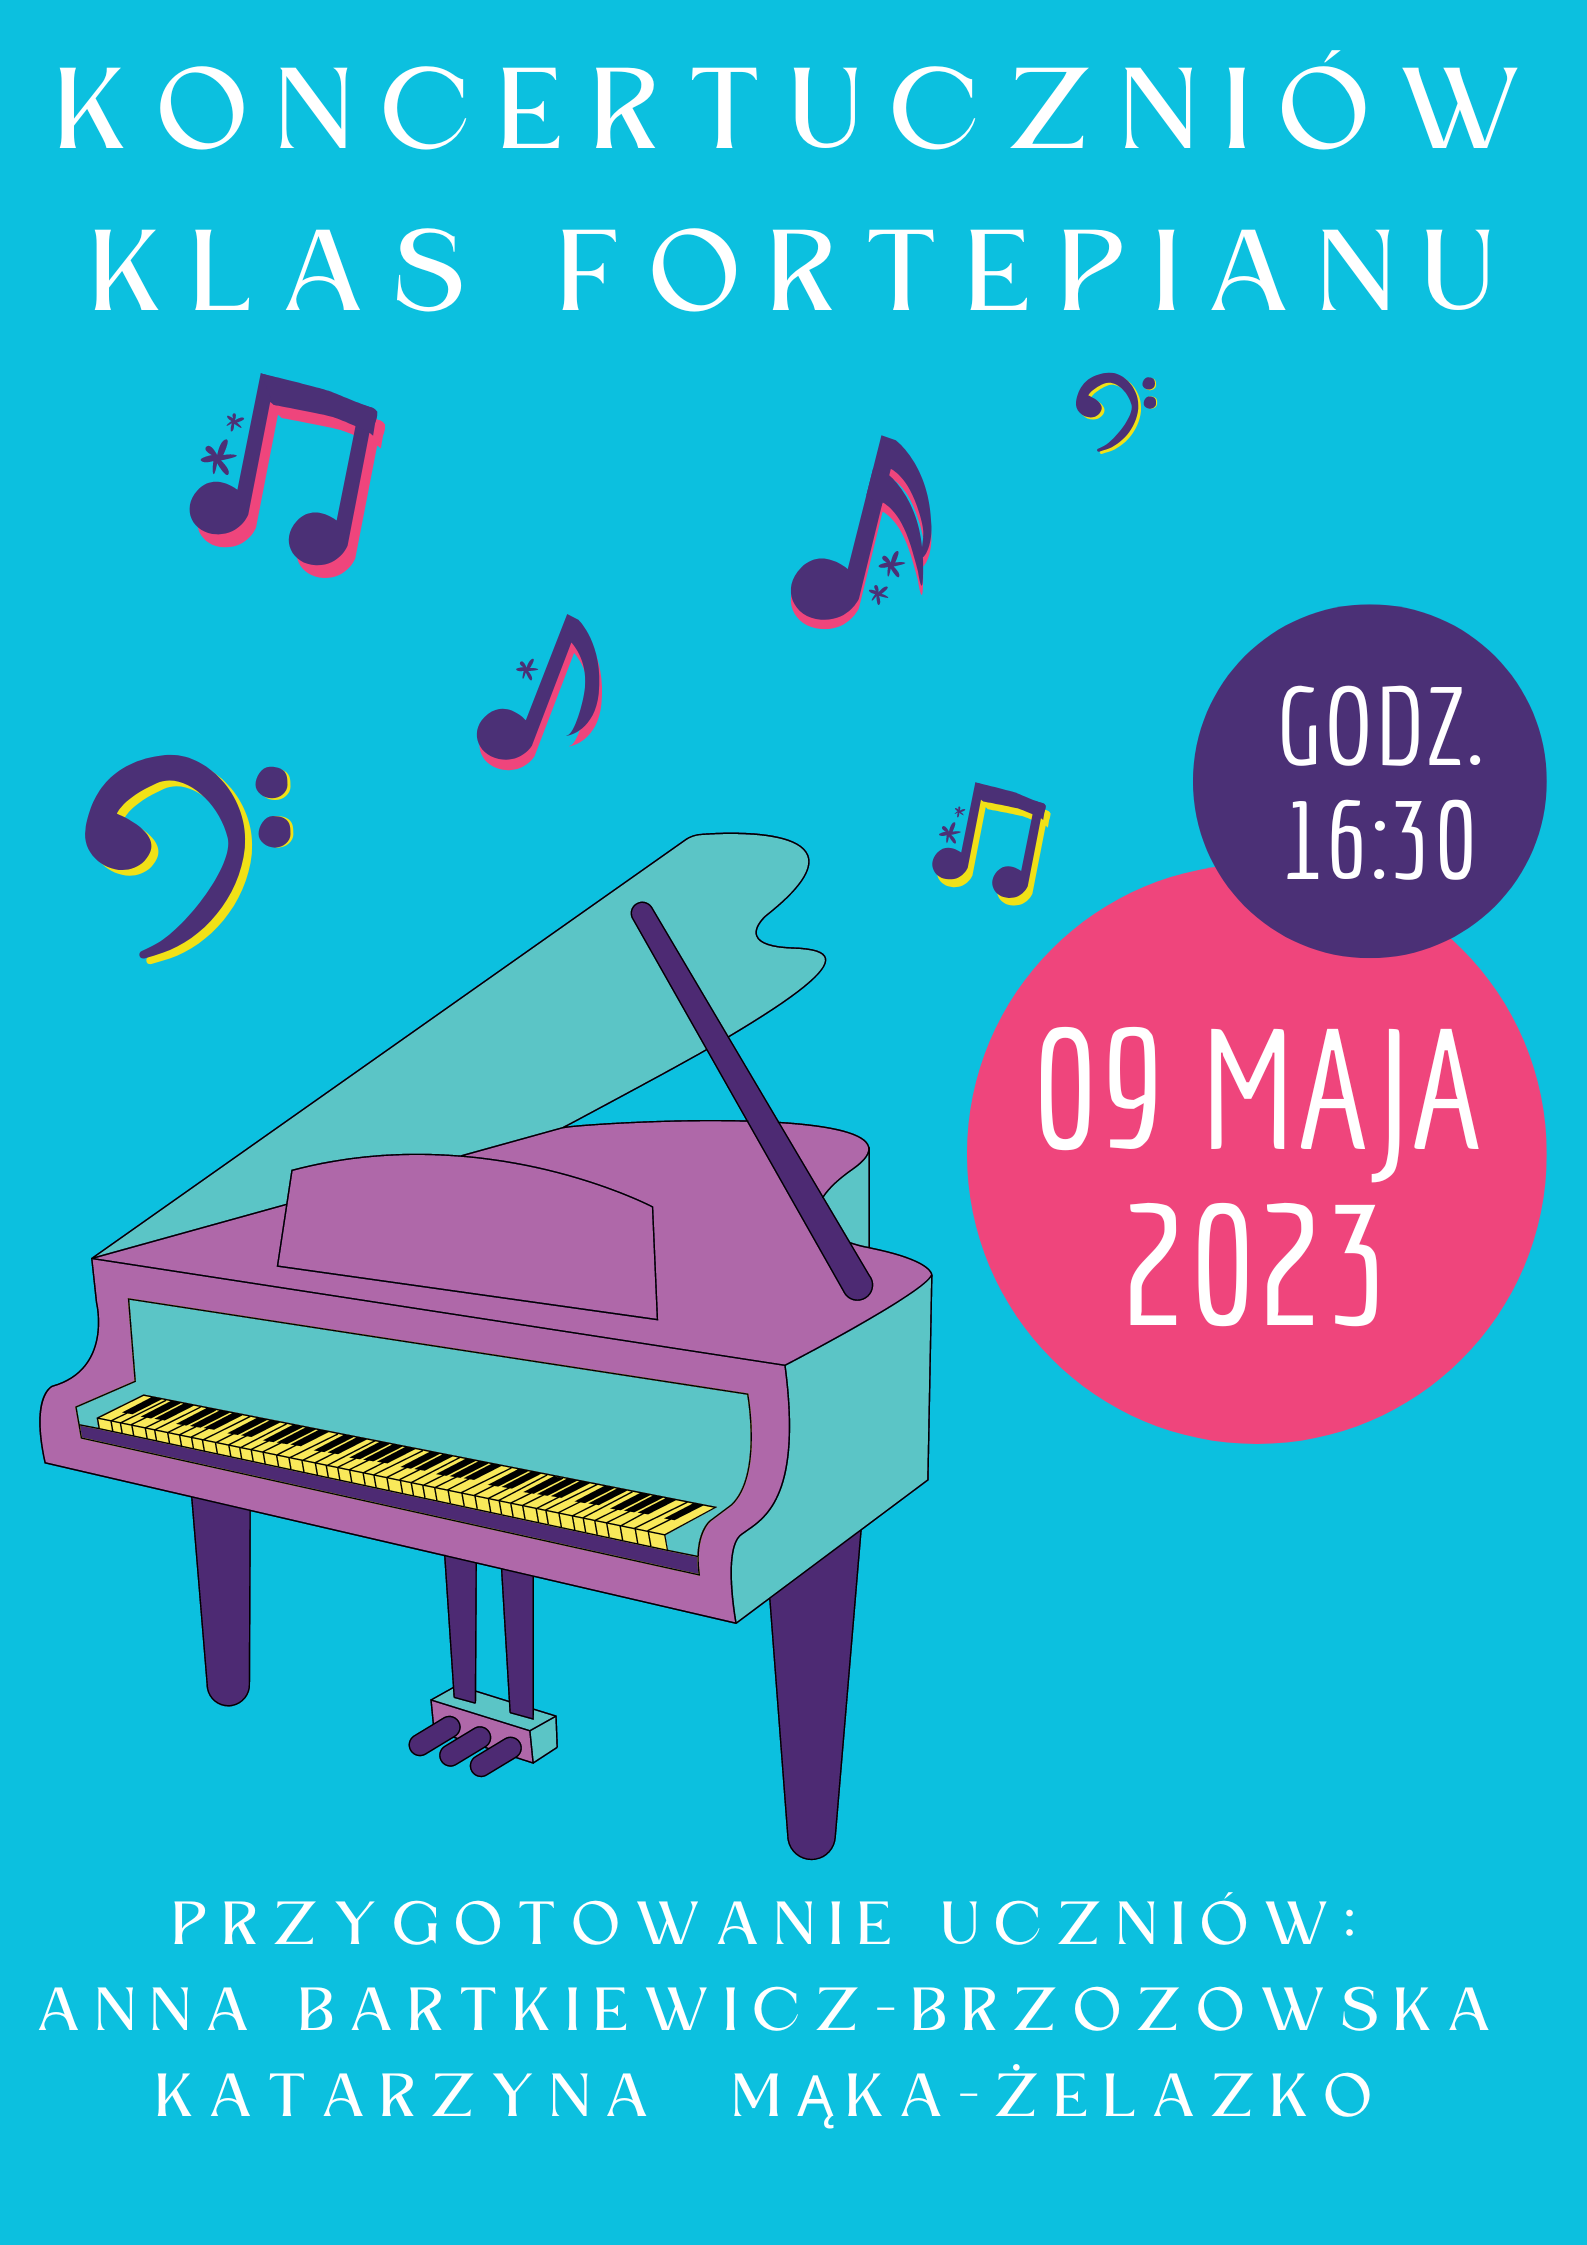 Plakat na niebieskim tle z grafiką fortepianu oraz szczegółowymi informacjami dotyczącymi koncertu uczniów klas fortepianu - 09 maja 2023